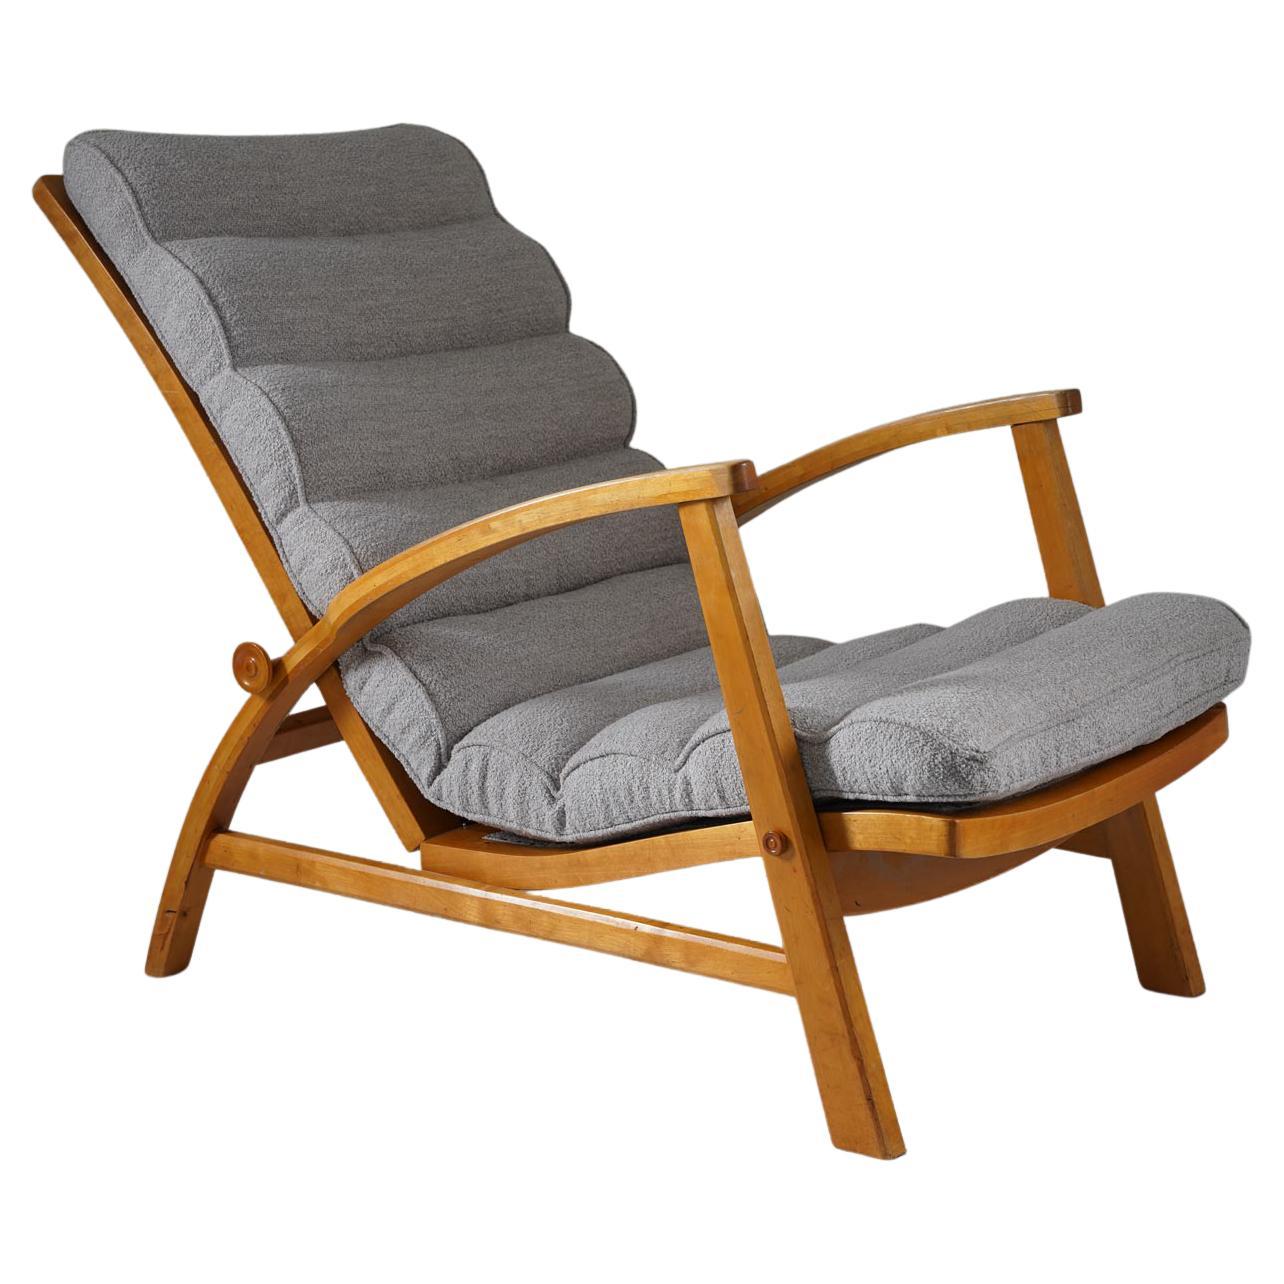 Scandinavian Lounge Chair Model "Vila" by KF, 1930s